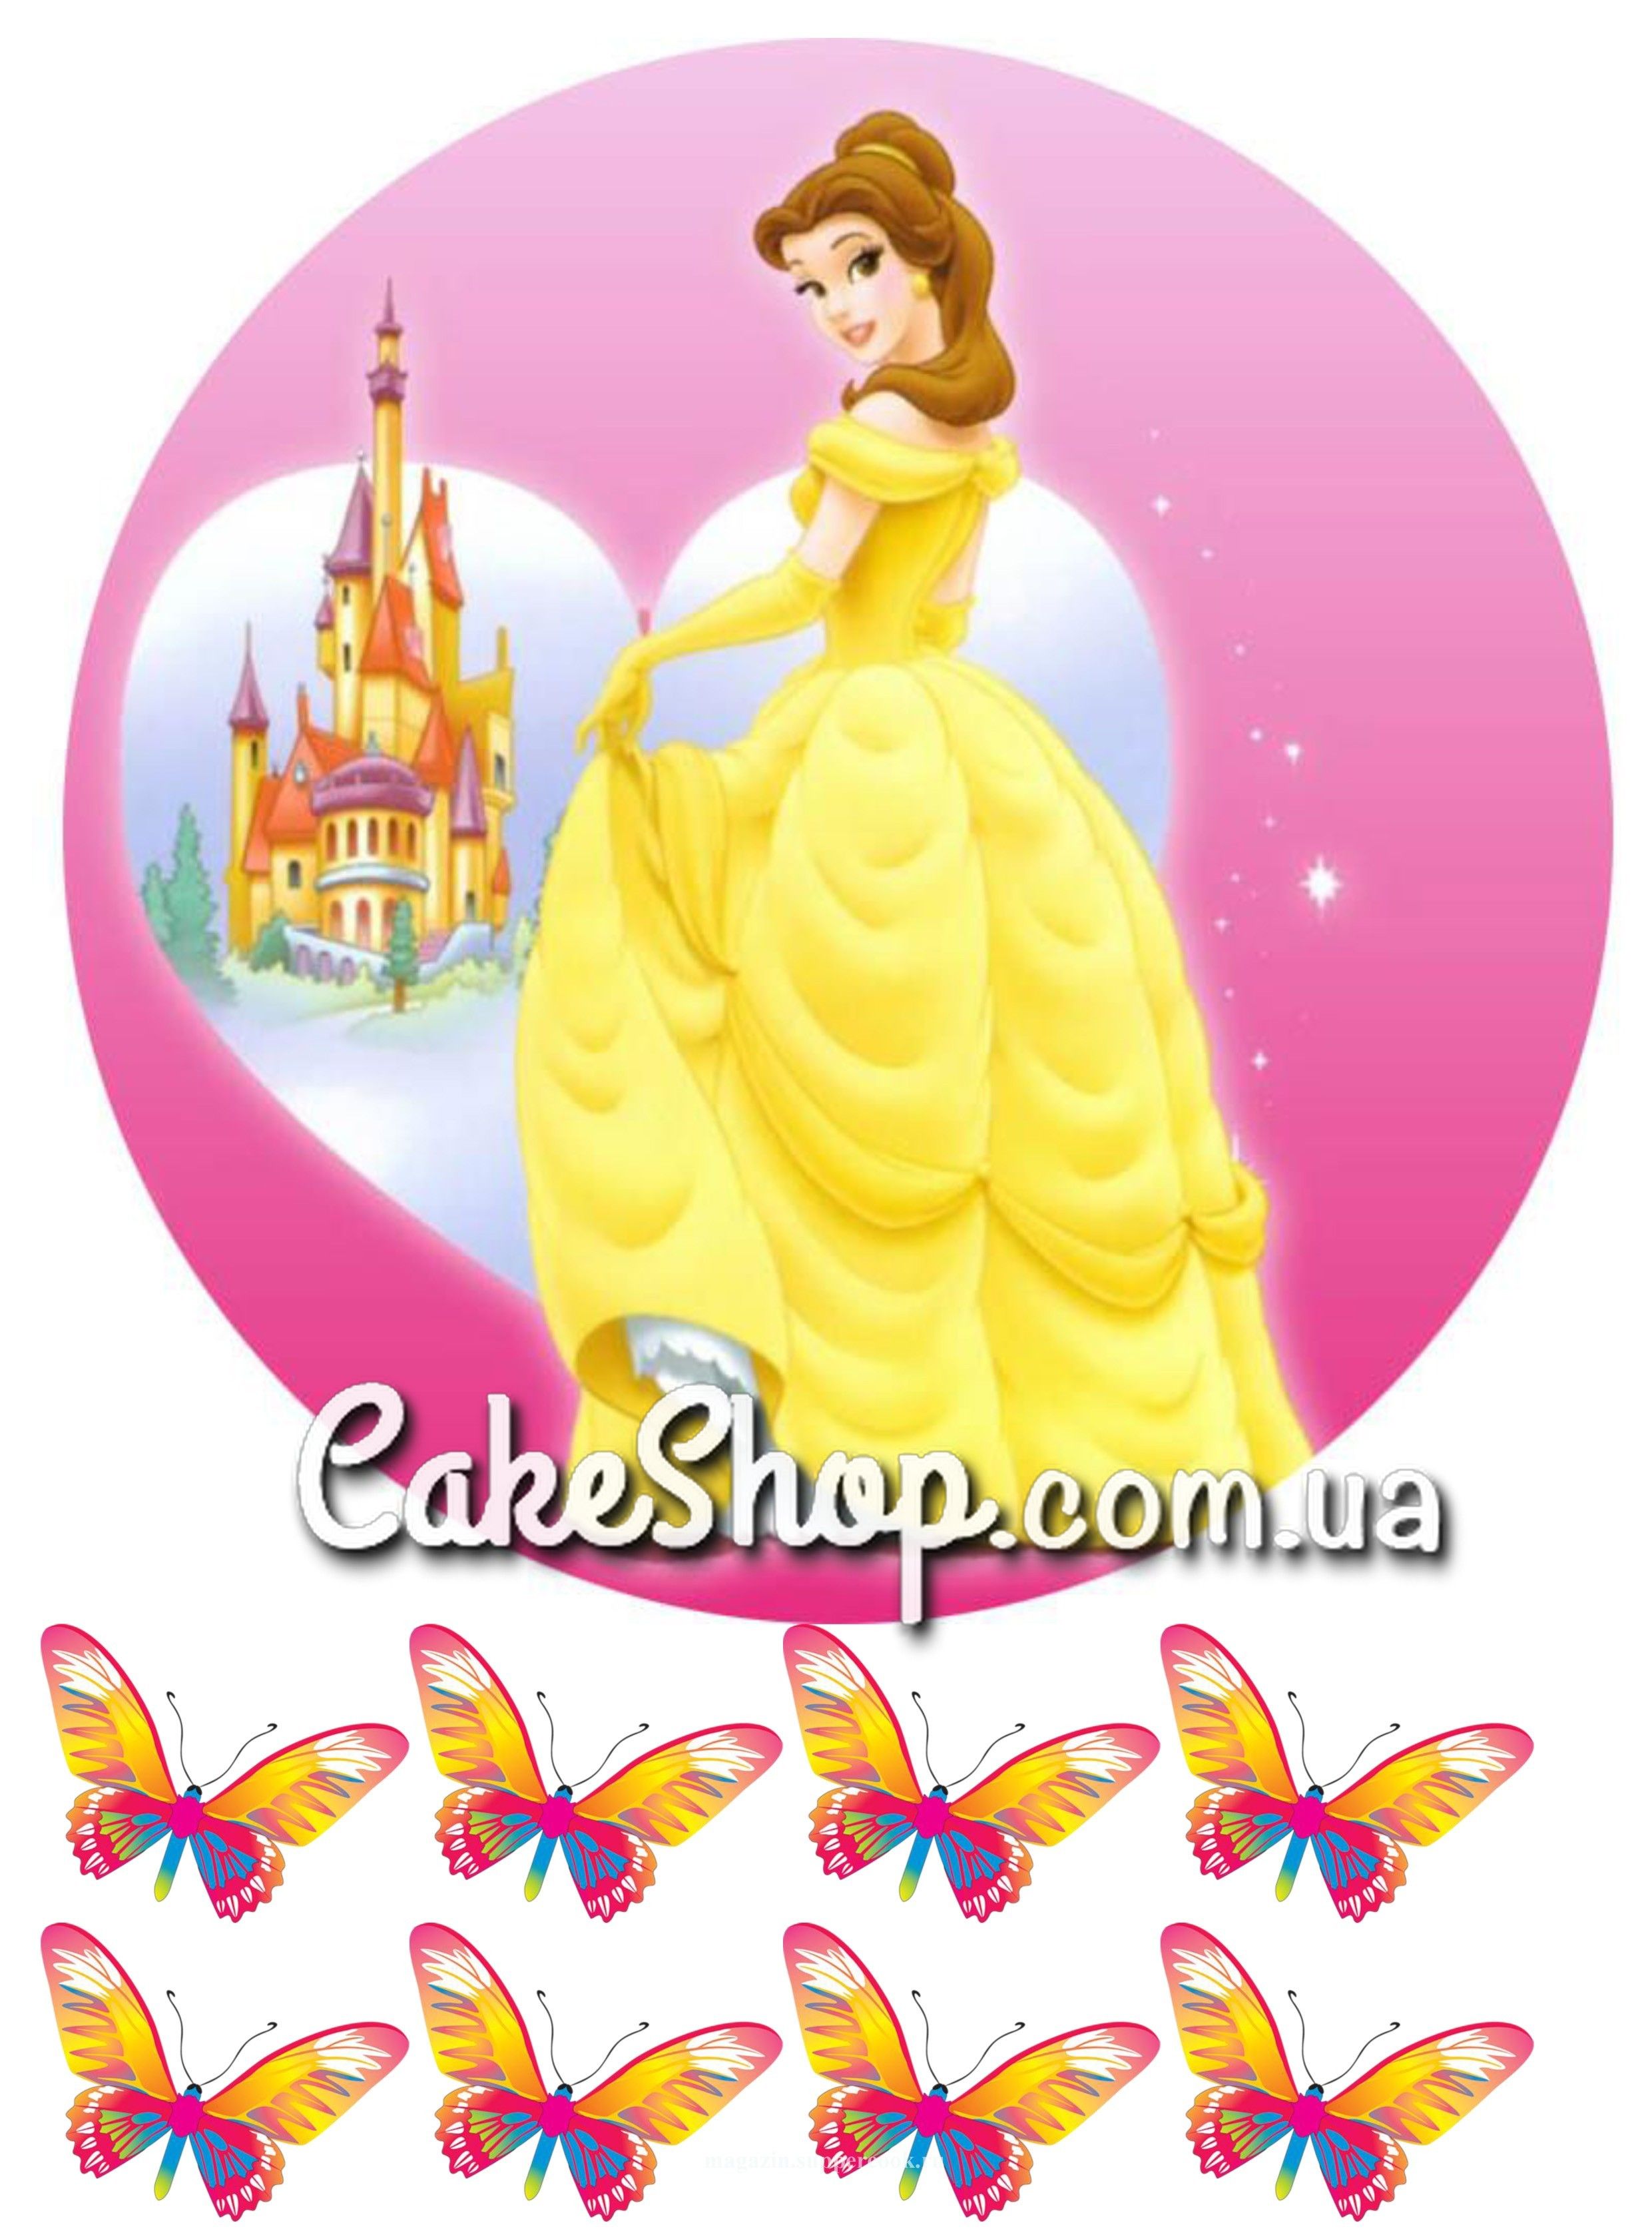 ⋗ Сахарная картинка Принцесса Белль купить в Украине ➛ CakeShop.com.ua, фото